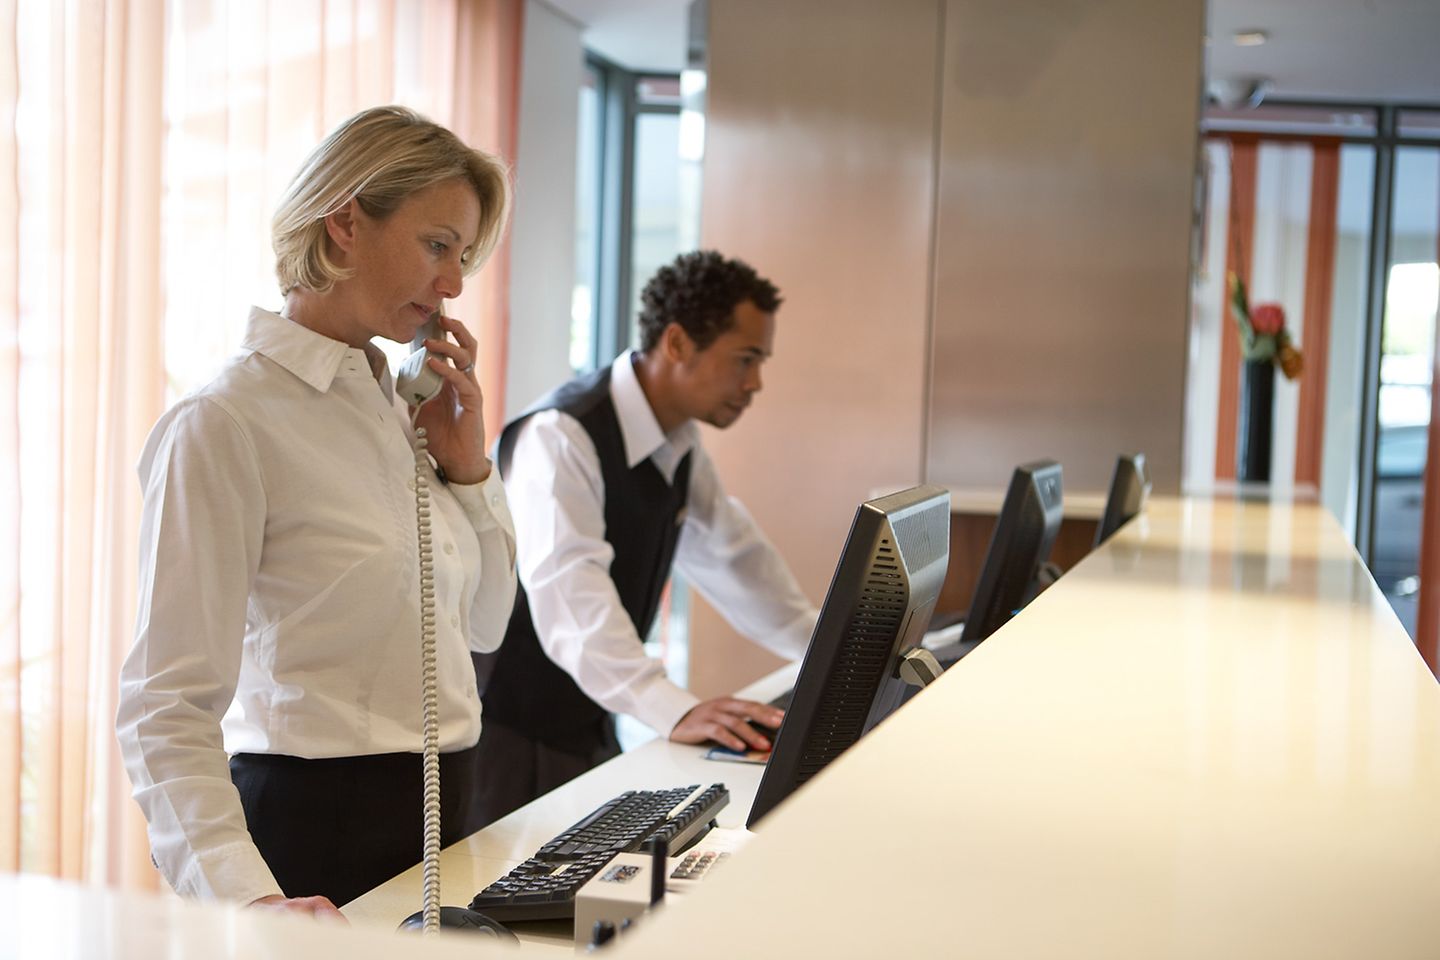 Empfangsdame steht telefonierend hinter der Hotelrezeption, ihr Kollege checkt Daten am Computer